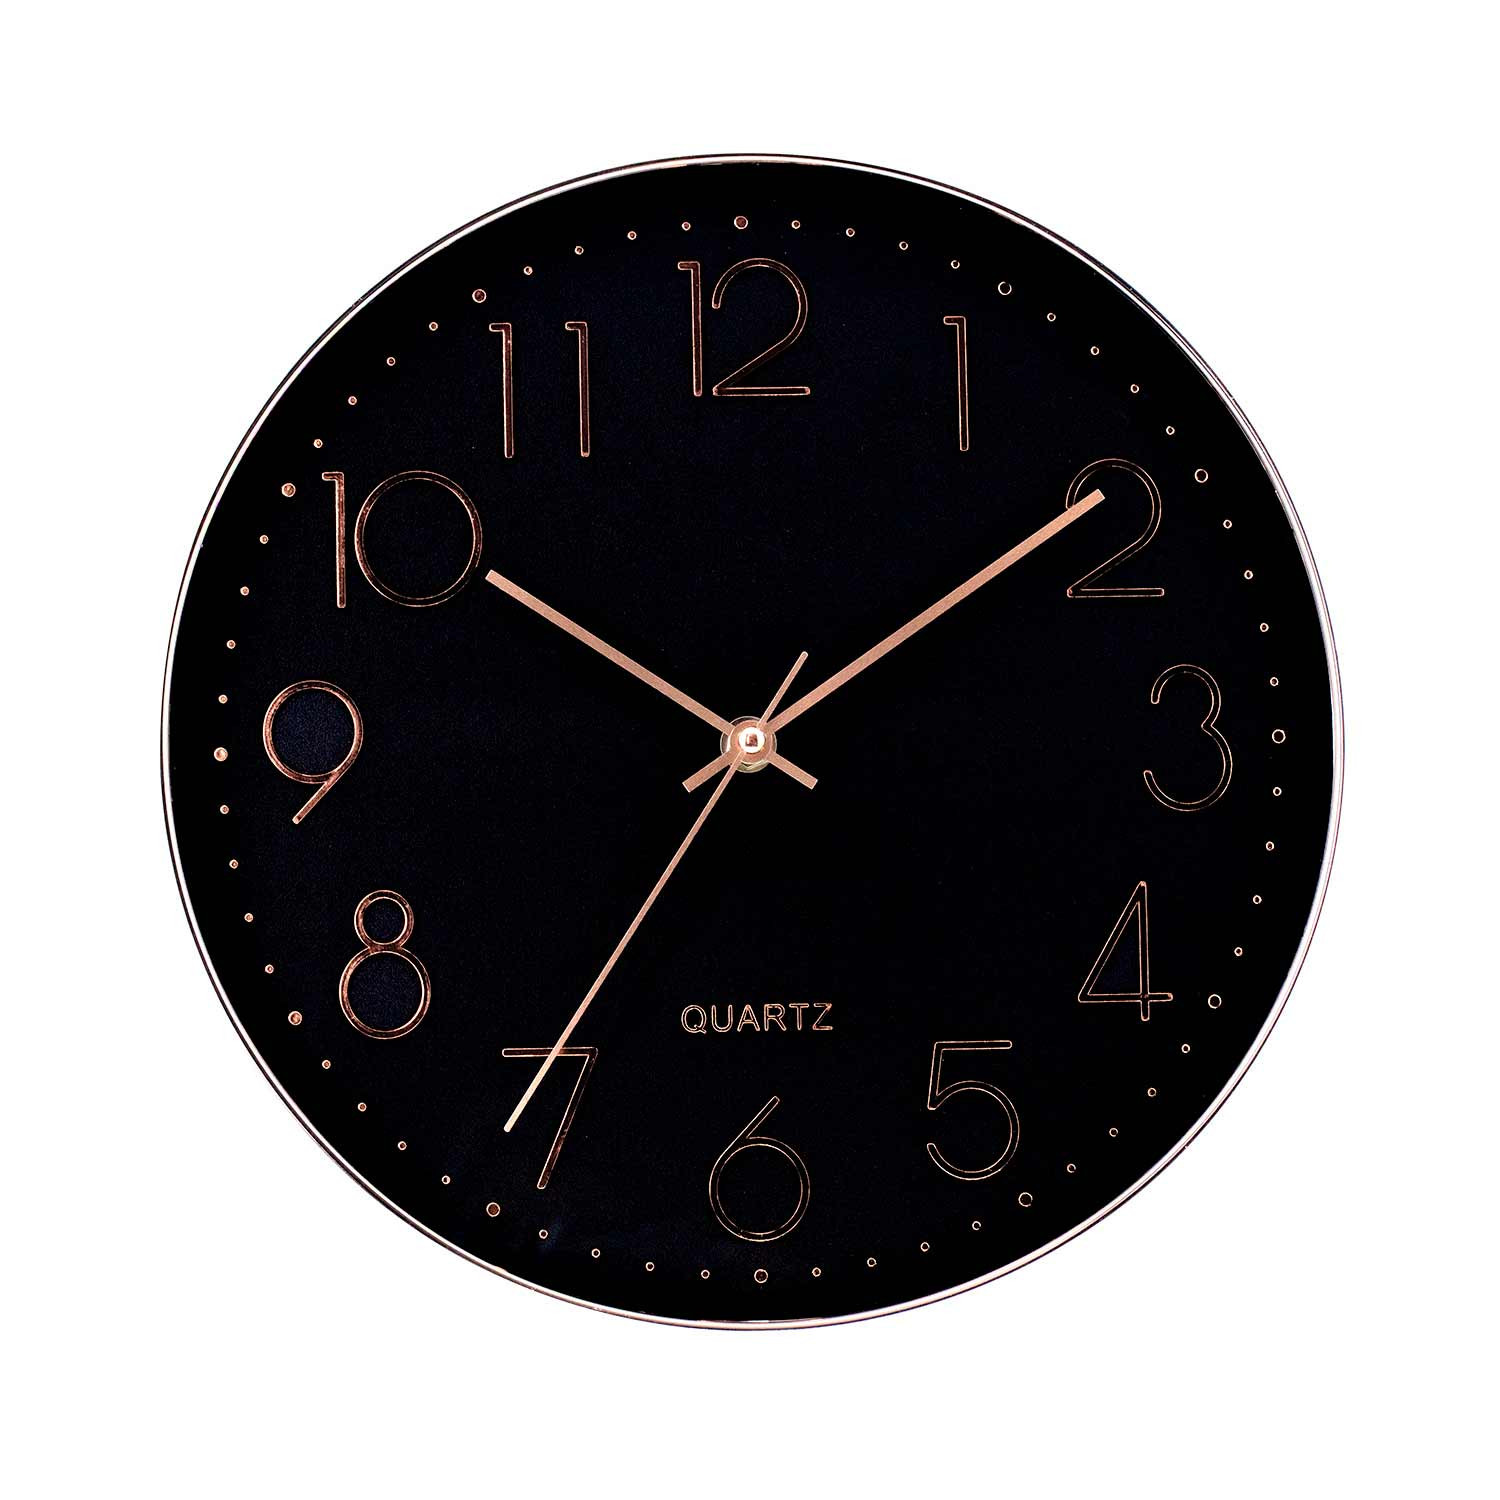 Reloj de Pared Moderno en Relieve con Esfera Negra Ø30 cm O91 Relojes de Pared 8